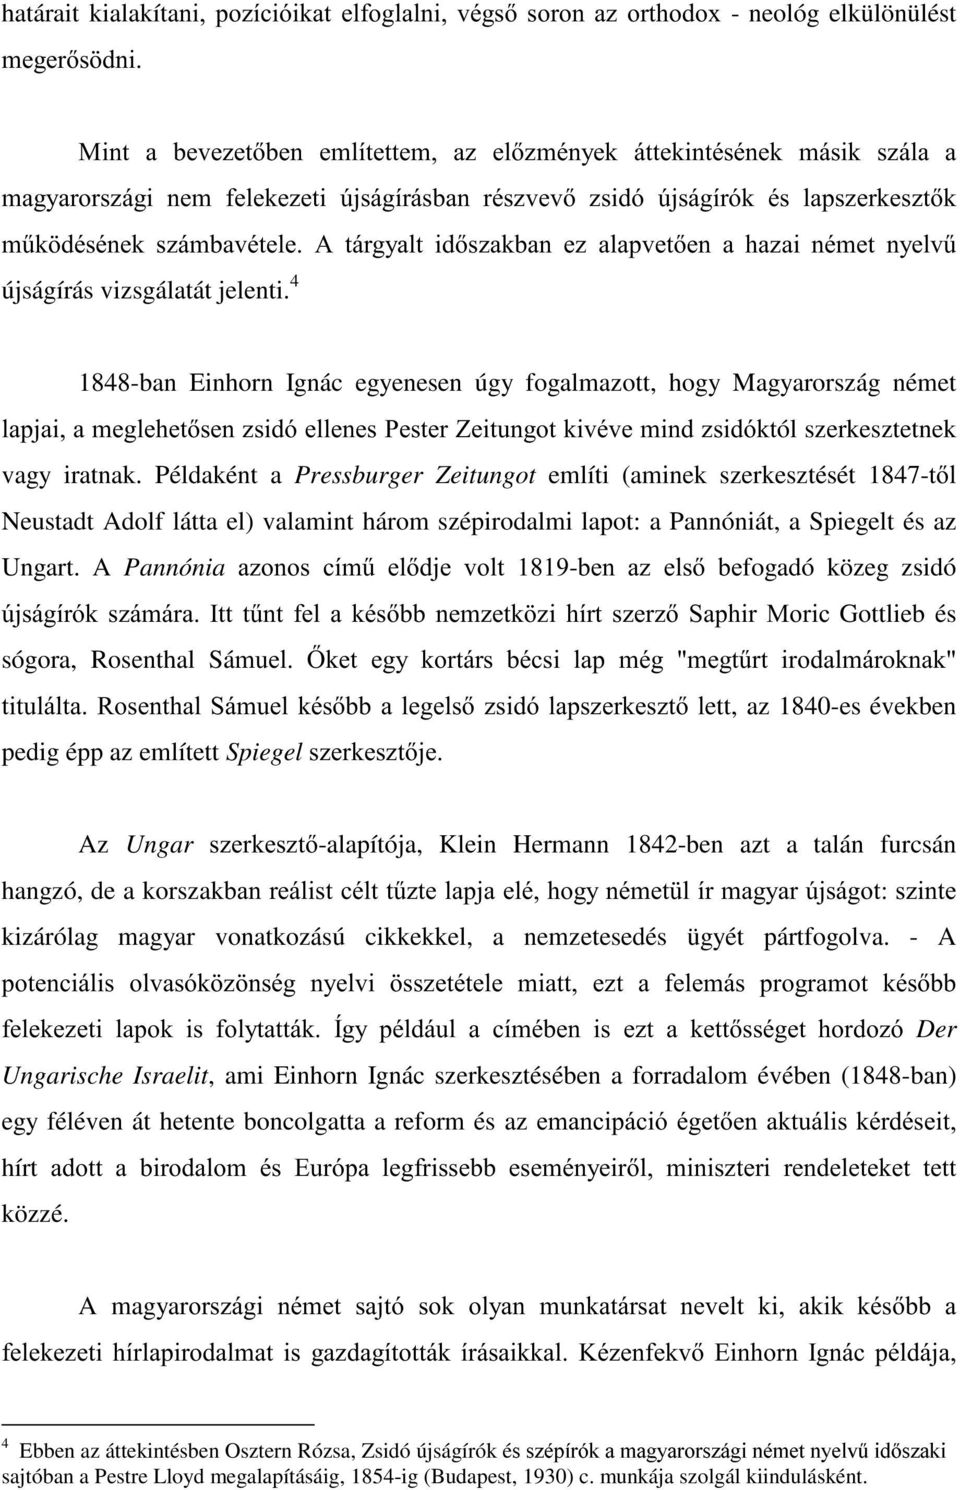 4 1848-ban Einhorn Ignác egyenesen úgy fogalmazott, hogy Magyarország német ODSMDLDPHJOHKHWVHQ]VLGyHOOHQHV3HVWHU=HLWXQJRWNLYpYHPLQG]VLGyNWól szerkesztetnek vagy iratnak.